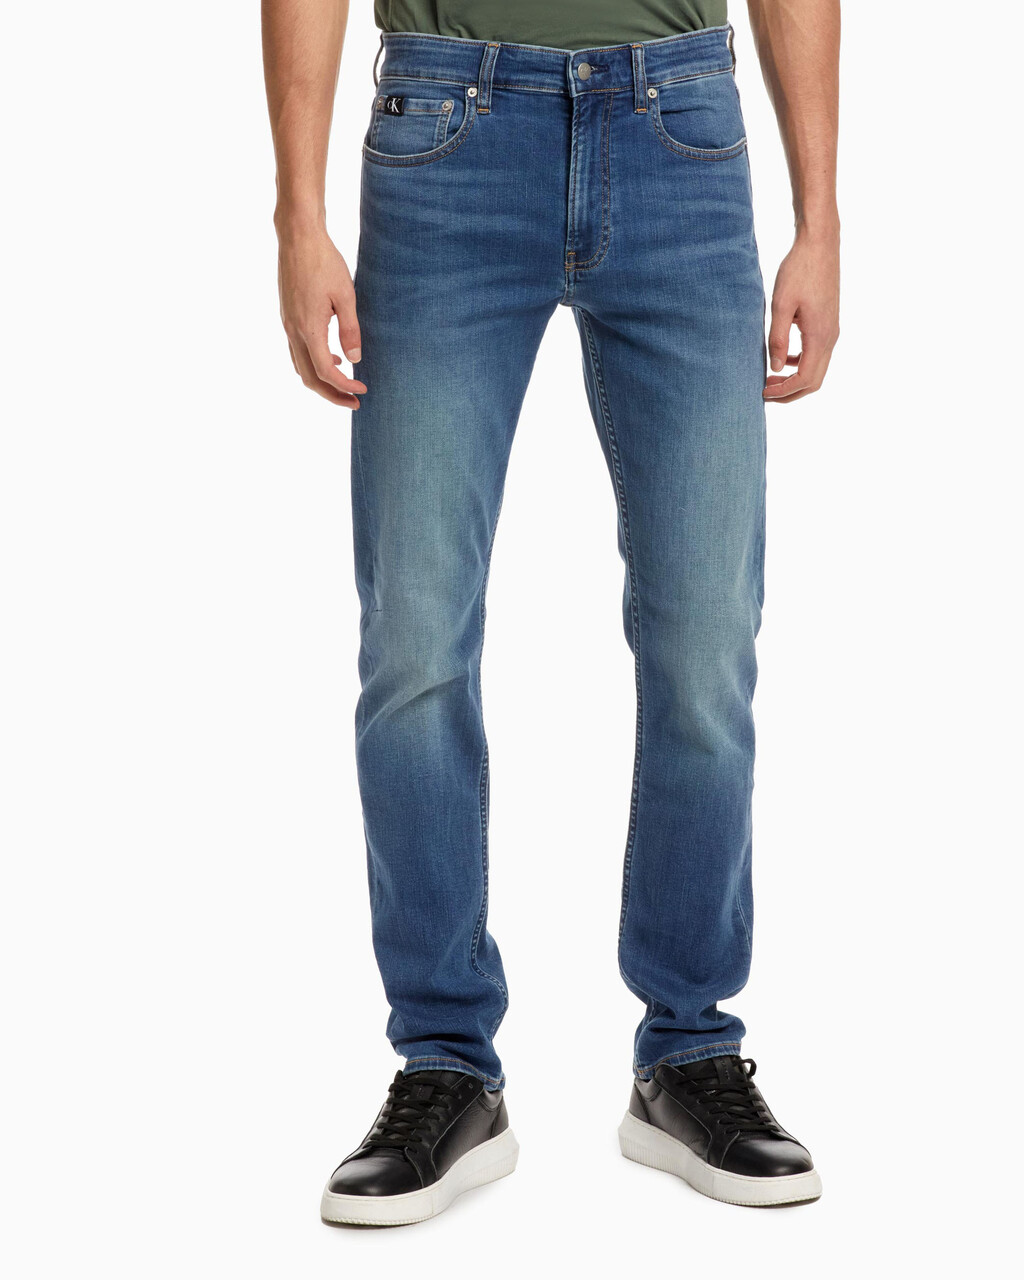 Core Vintage Wash Slim Jeans, Mid Blue, hi-res